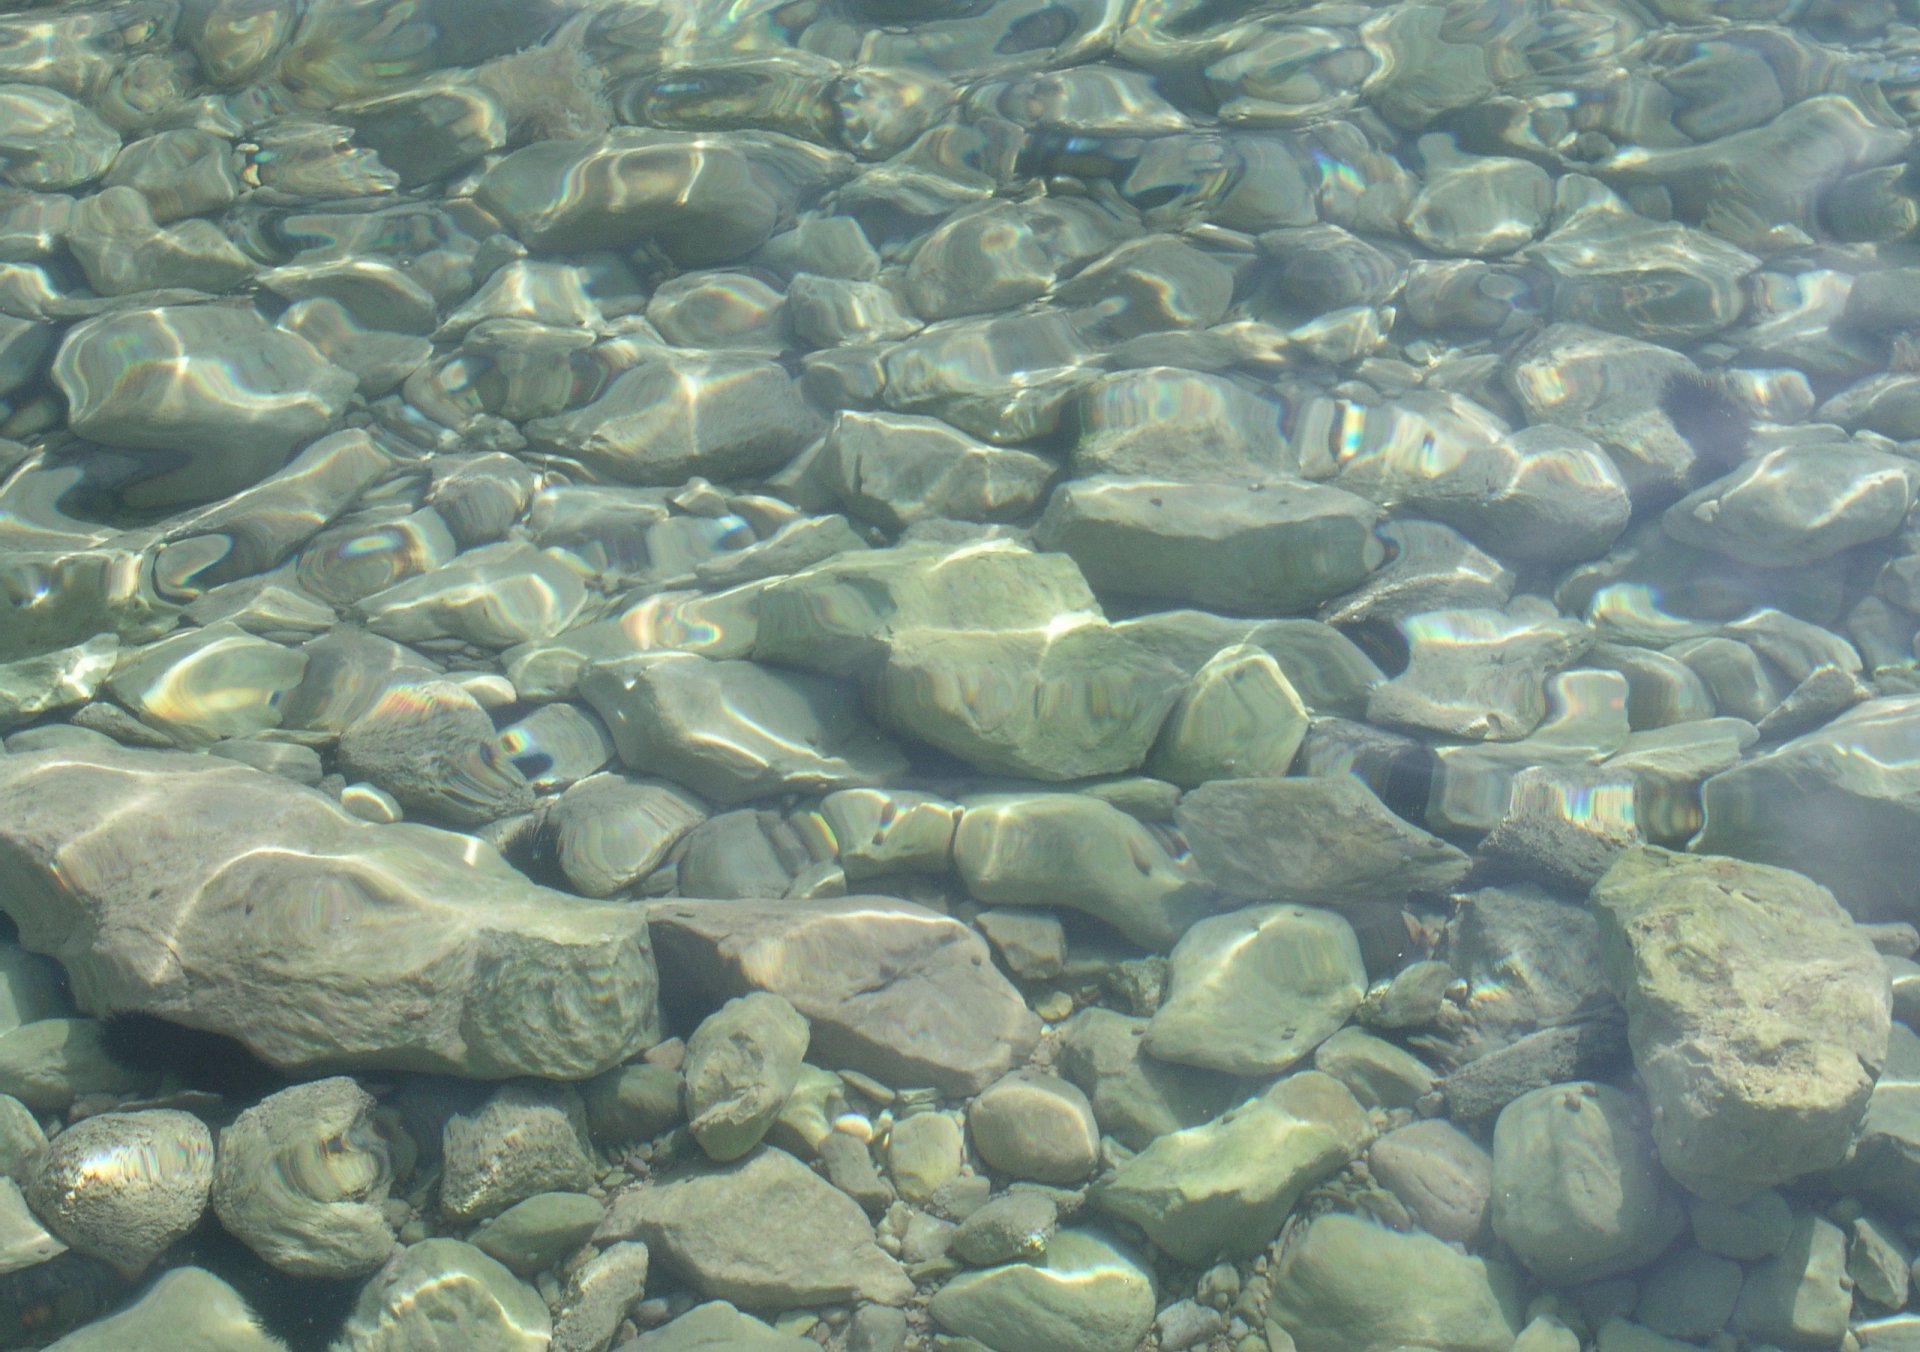 textures stones underwater stones distorte desktop background HD ...